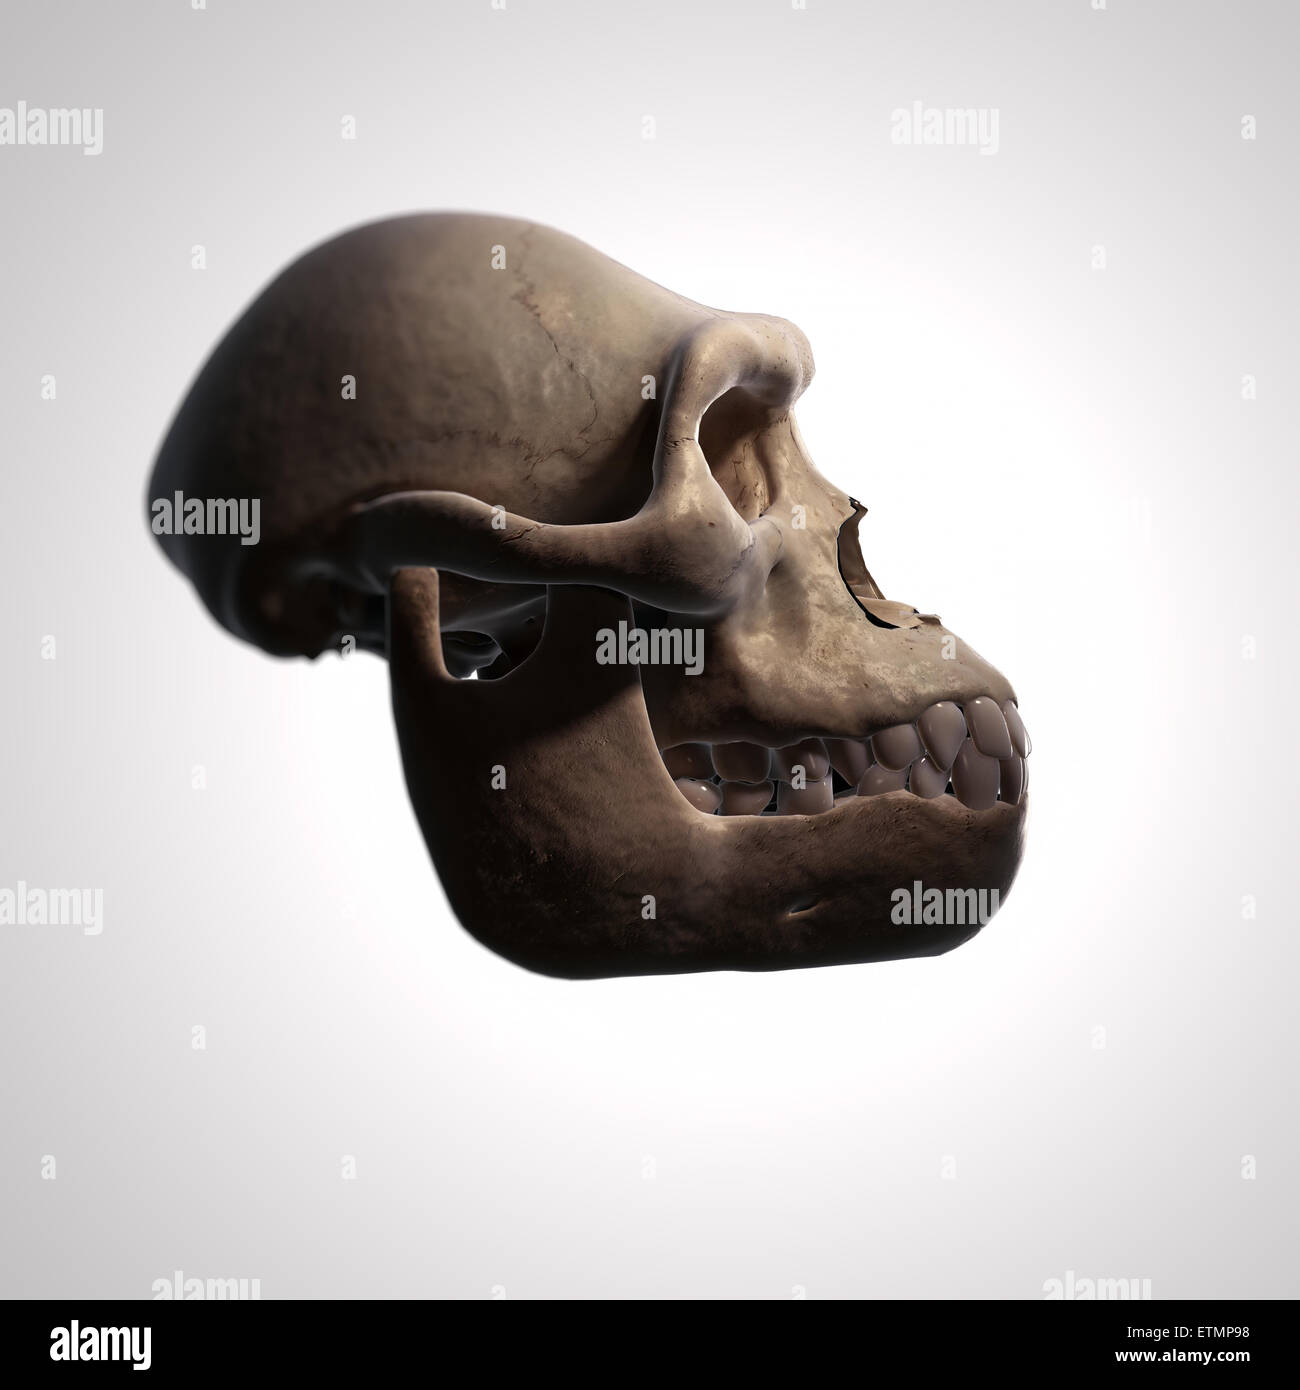 Illustration eines Australopithecus-Schädel.  Australopithecus ist eine ausgestorbene Gattung der Hominiden und frühen Vorfahren Homo sapiens. Stockfoto